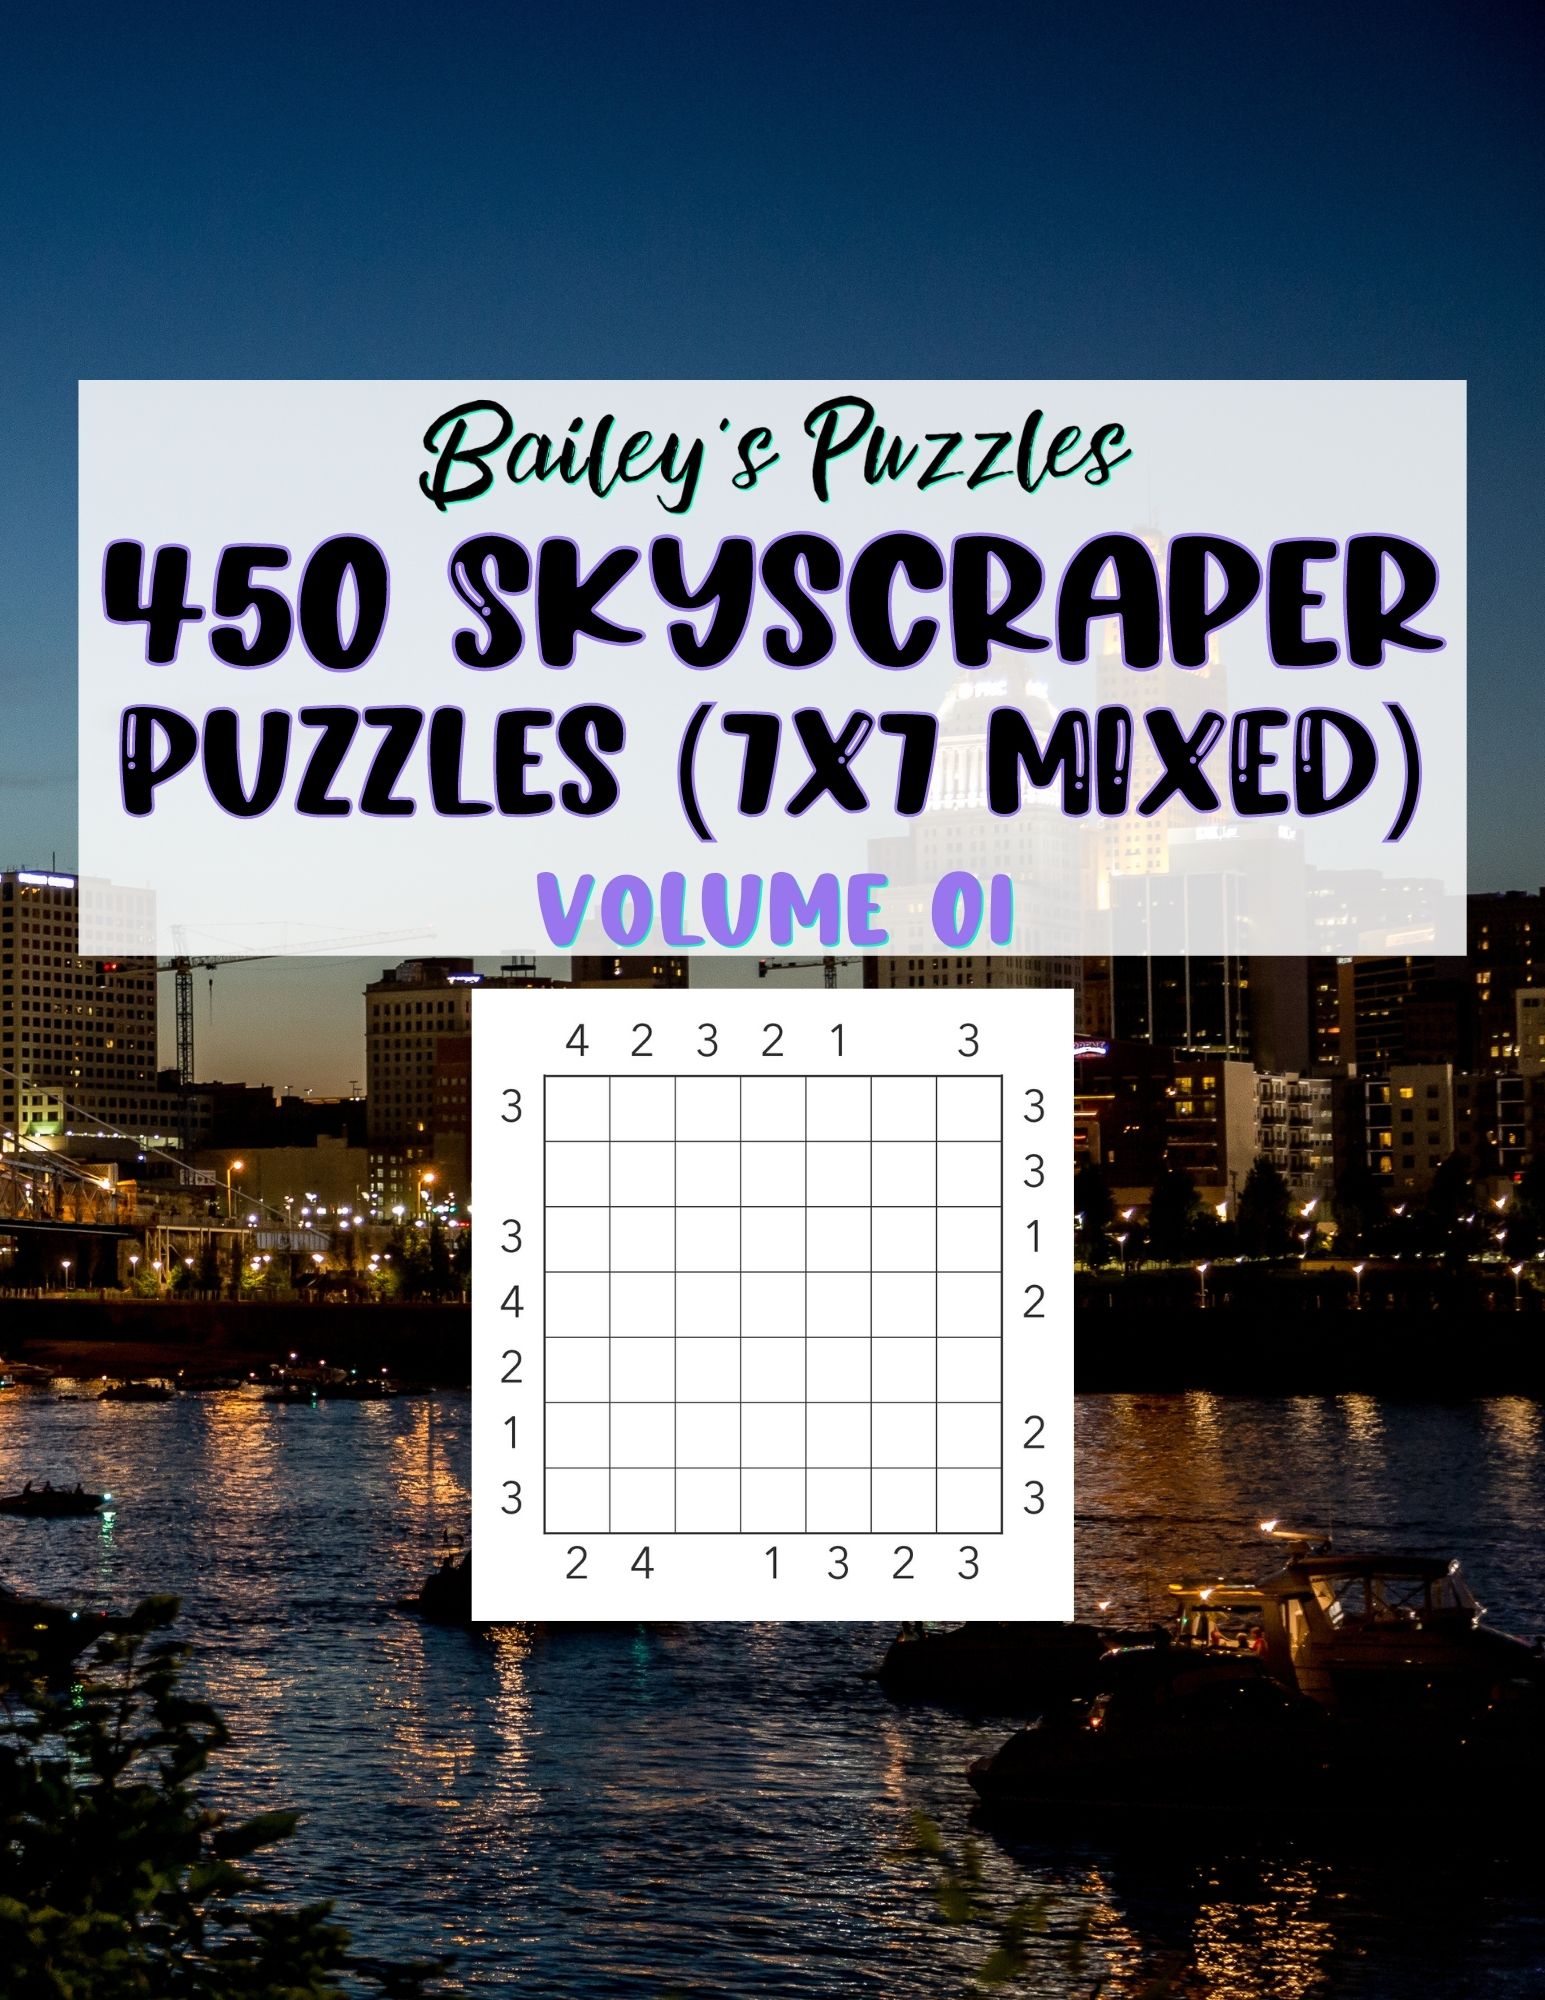 Front Cover - 450 Skyscraper Puzzles (7x7, mixed)